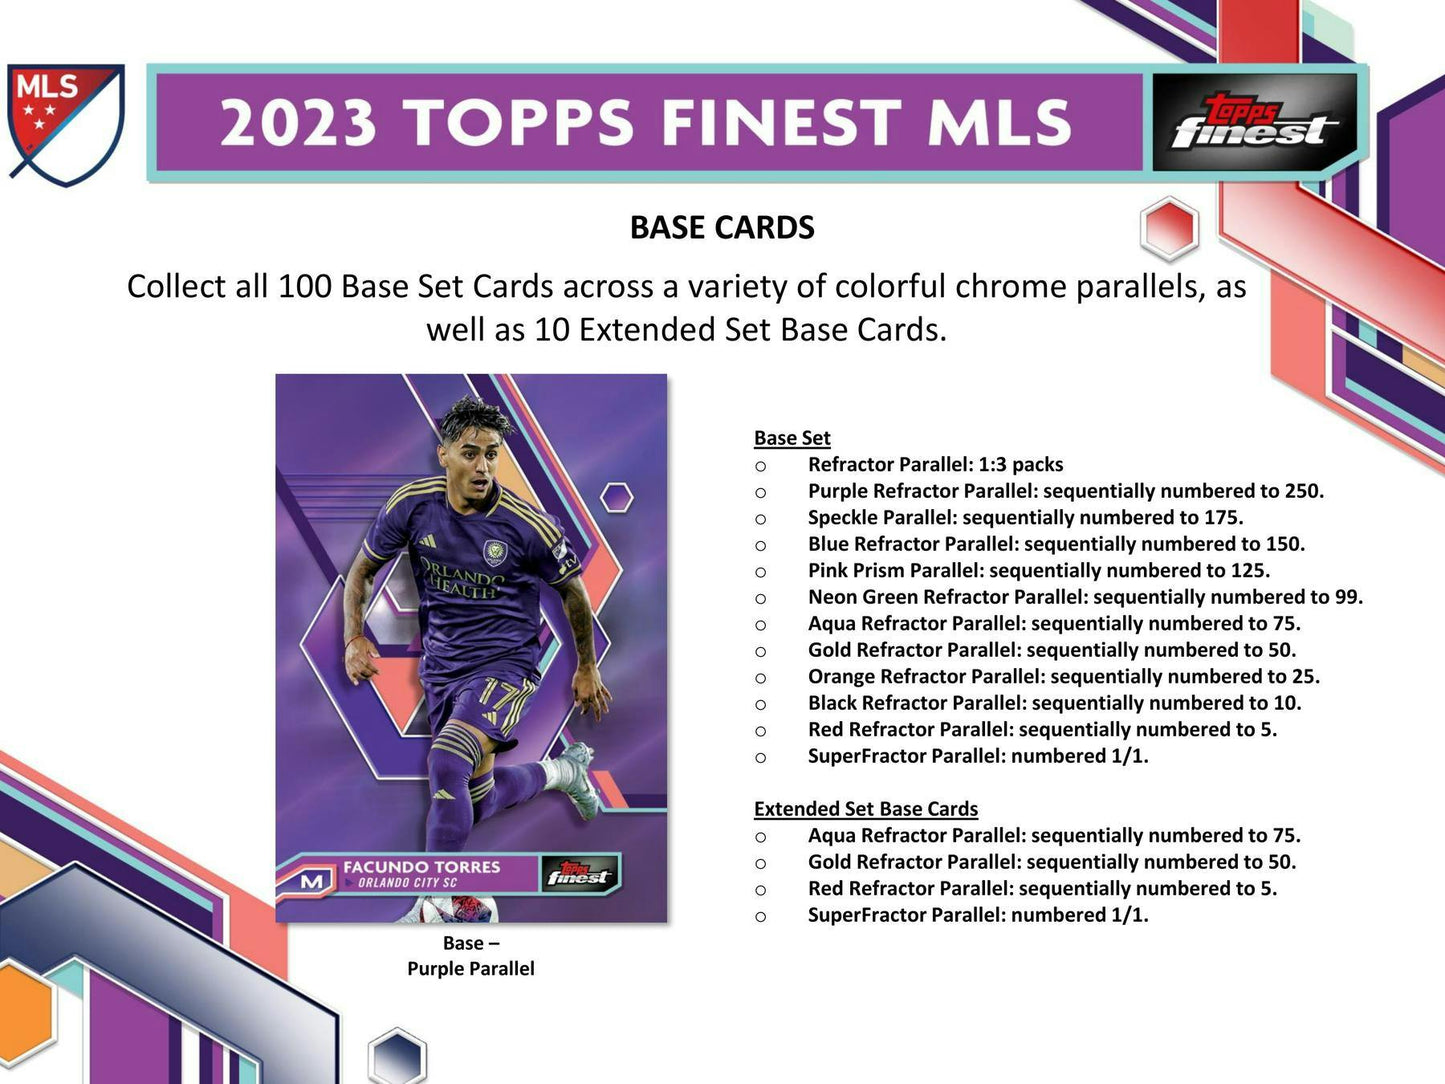 2023 Topps MLS Major League Soccer Finest Soccer, Hobby Box